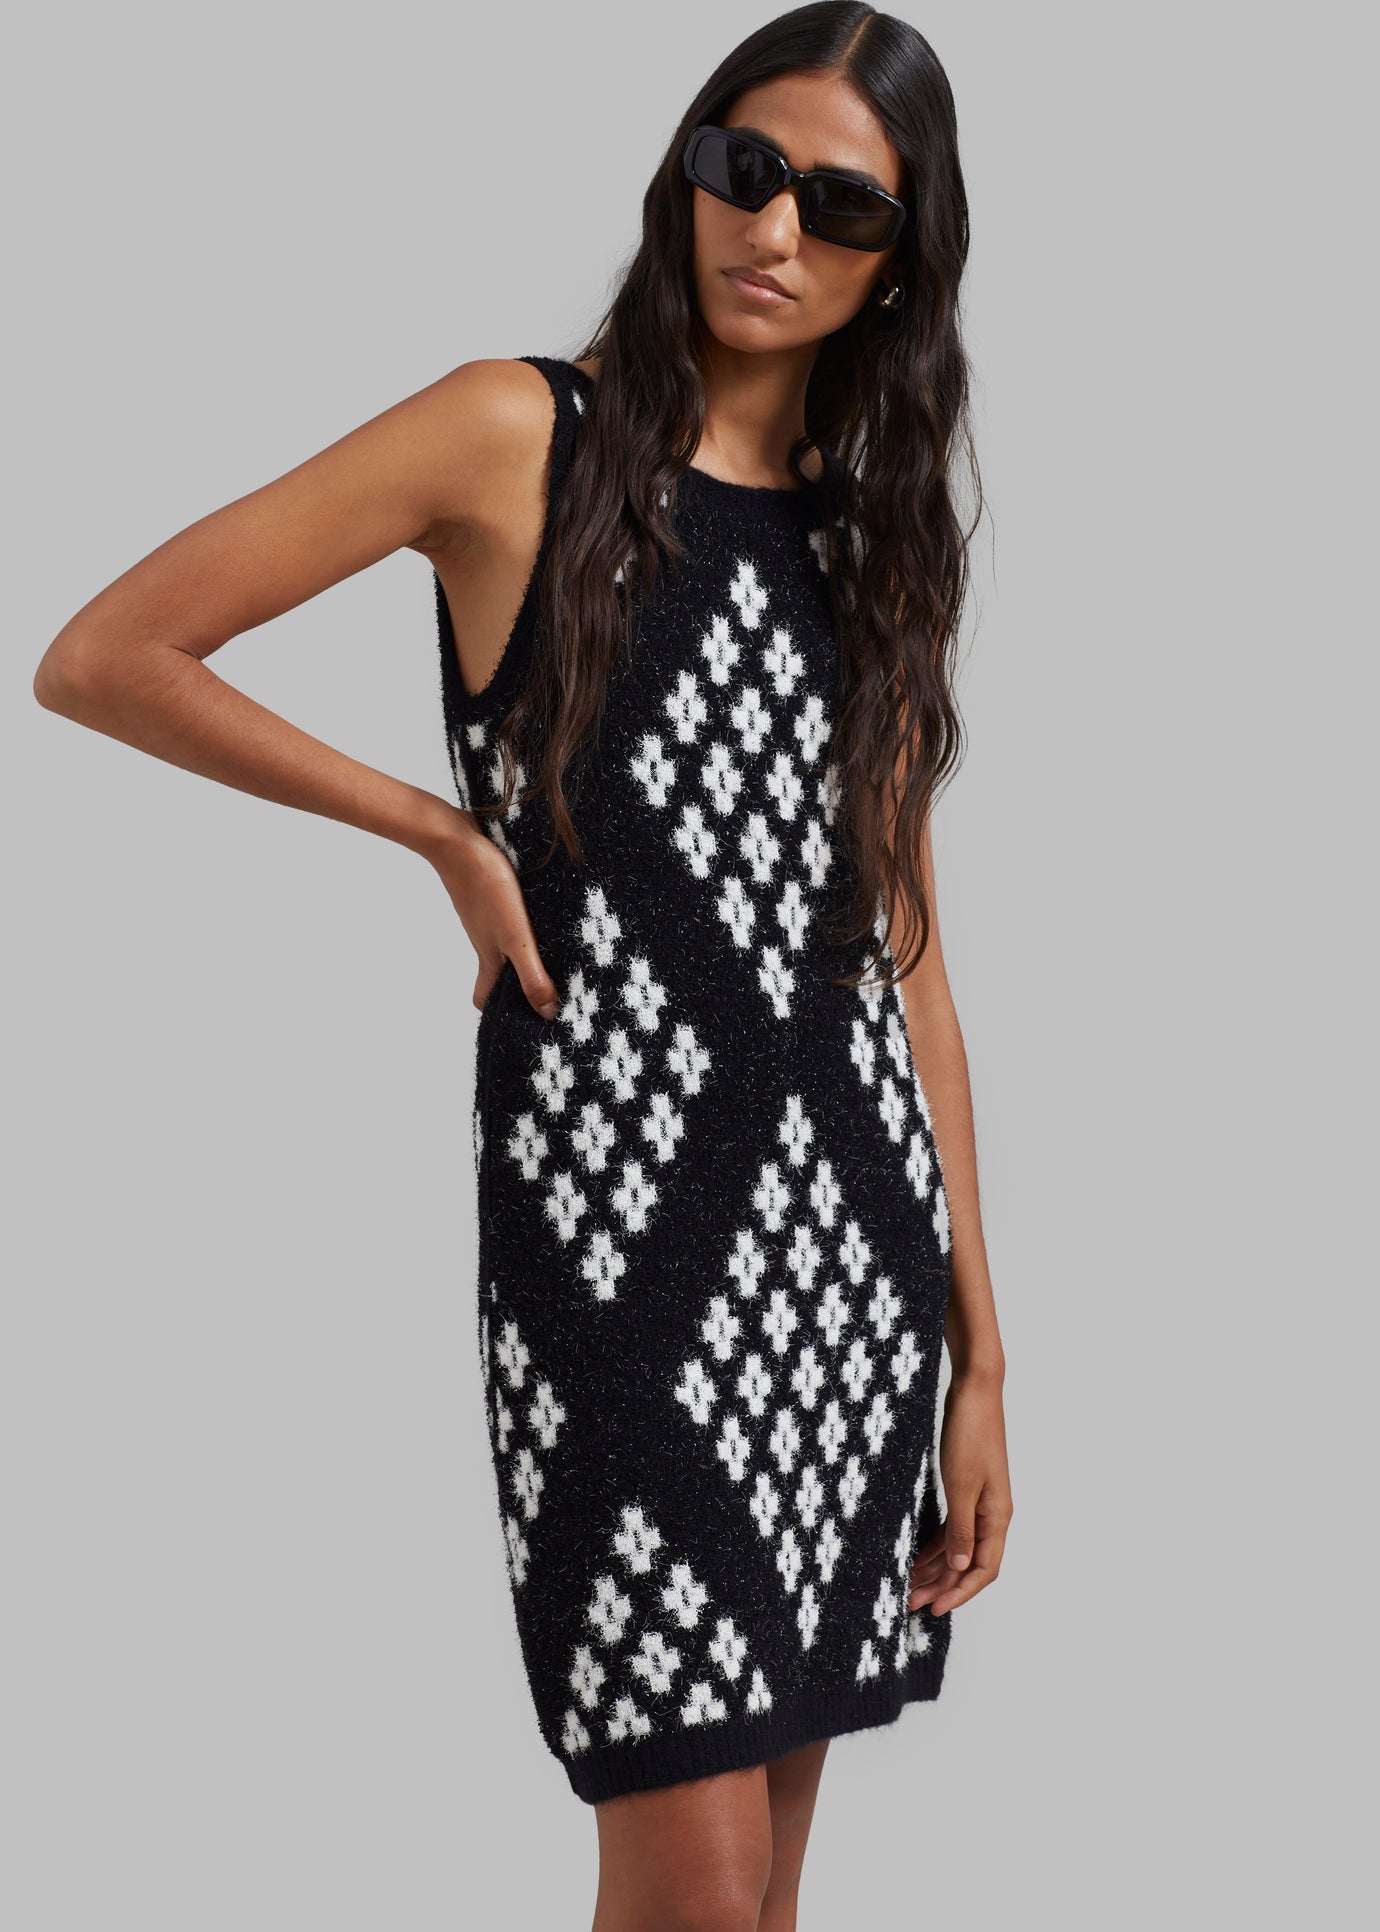 3.1 Phillip Lim Argyle Jacquard Sleeveless Mini Dress - Black Multi